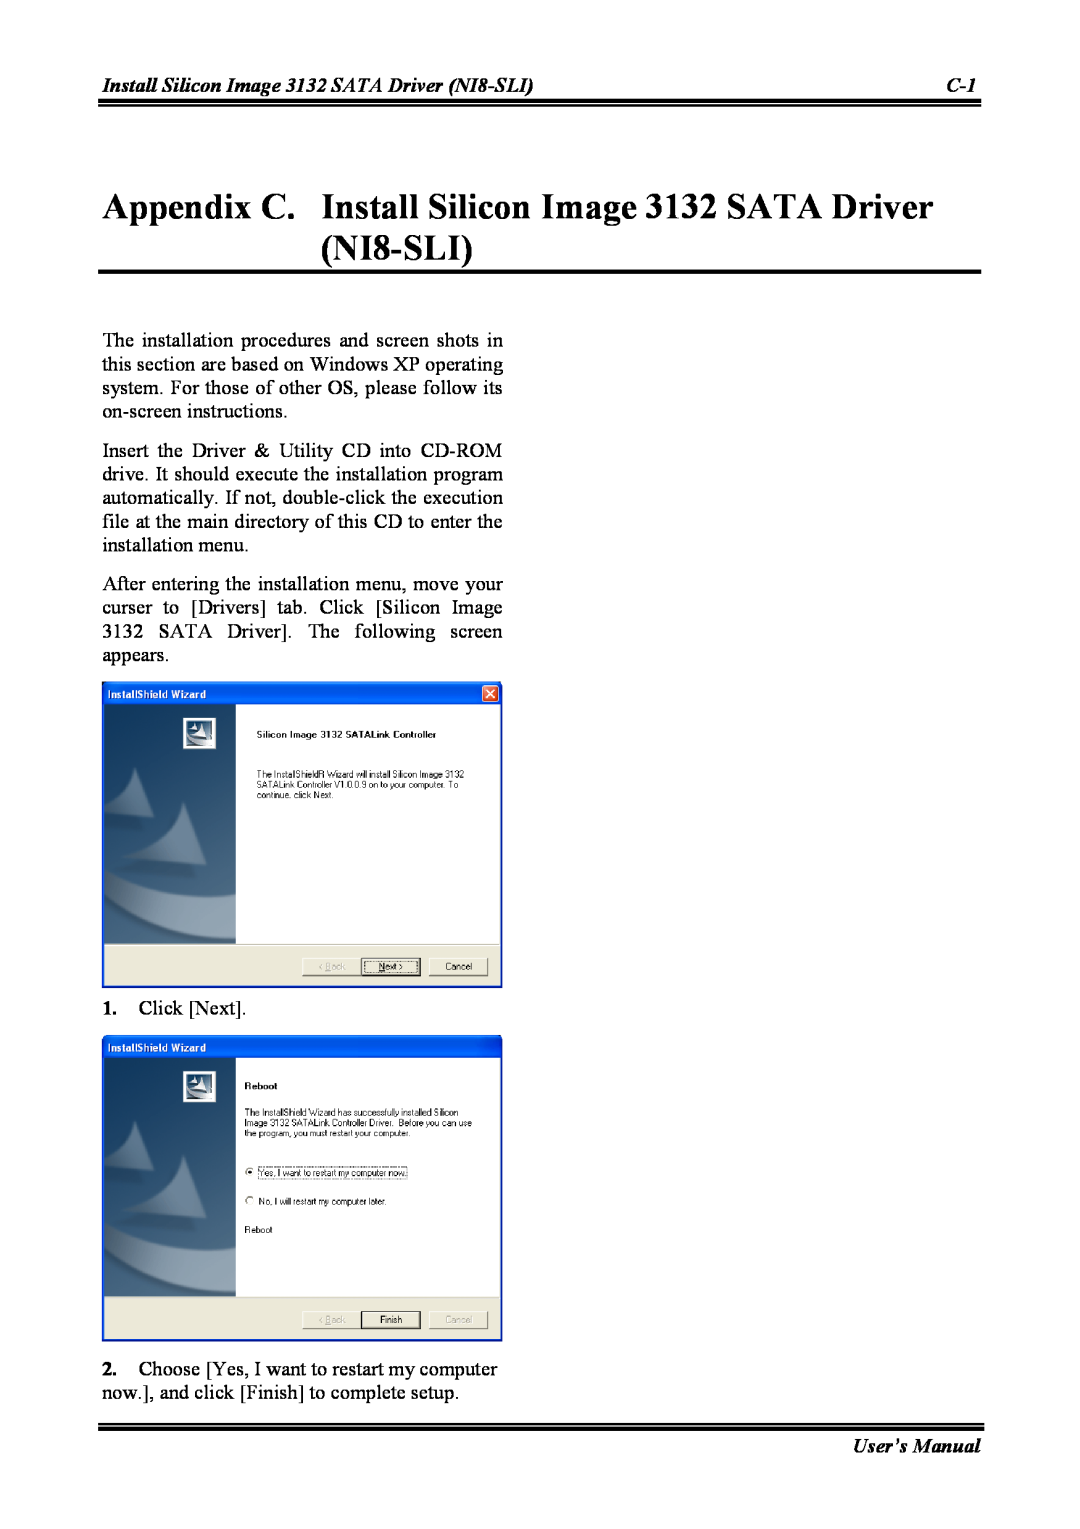 Abit NI8 SLI user manual Appendix C. Install Silicon Image 3132 SATA Driver NI8-SLI, User’s Manual 